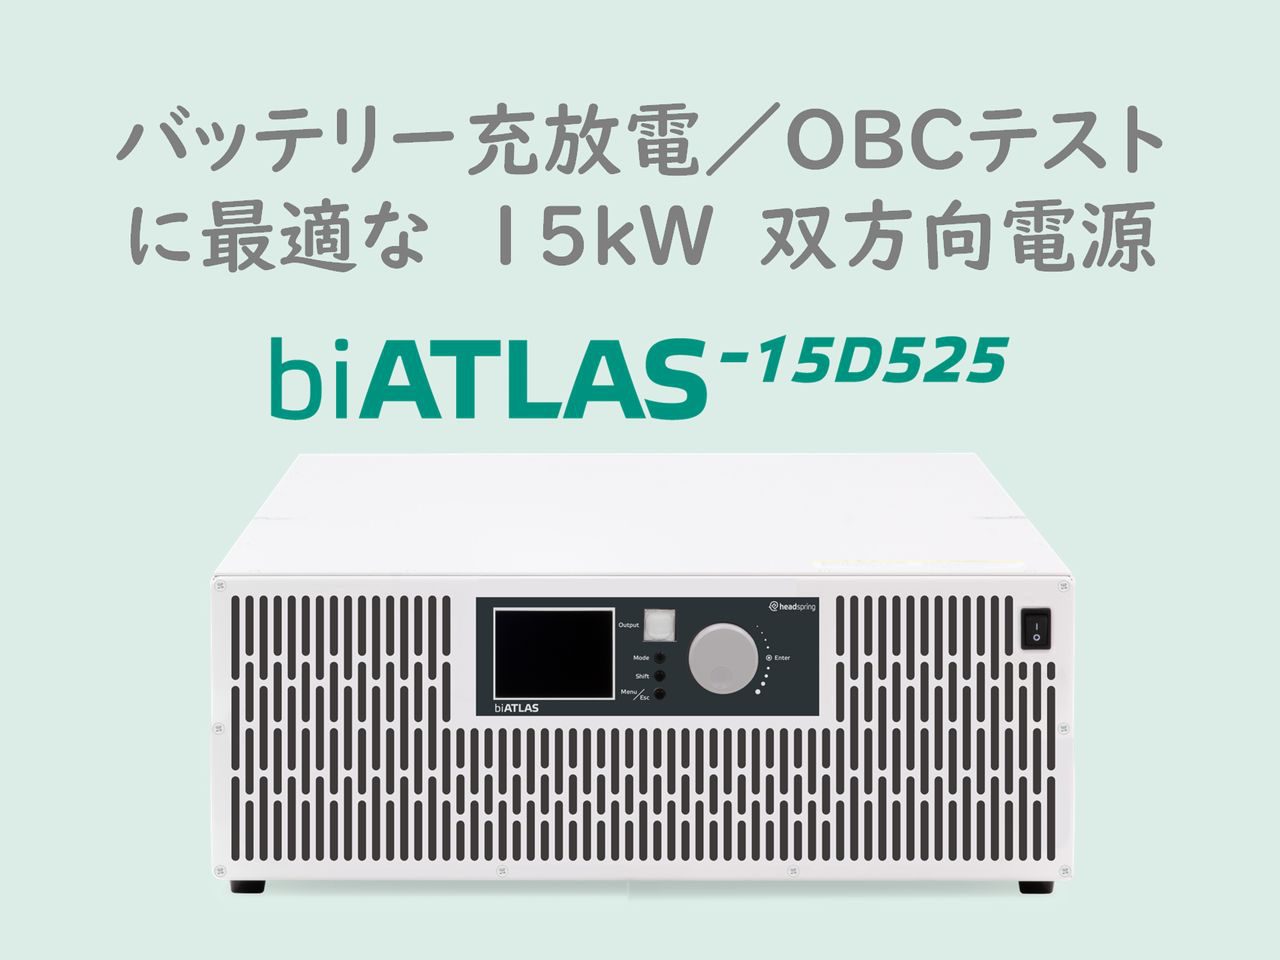 新発売の15kW 双方向直流電源 biATLAS-15D525